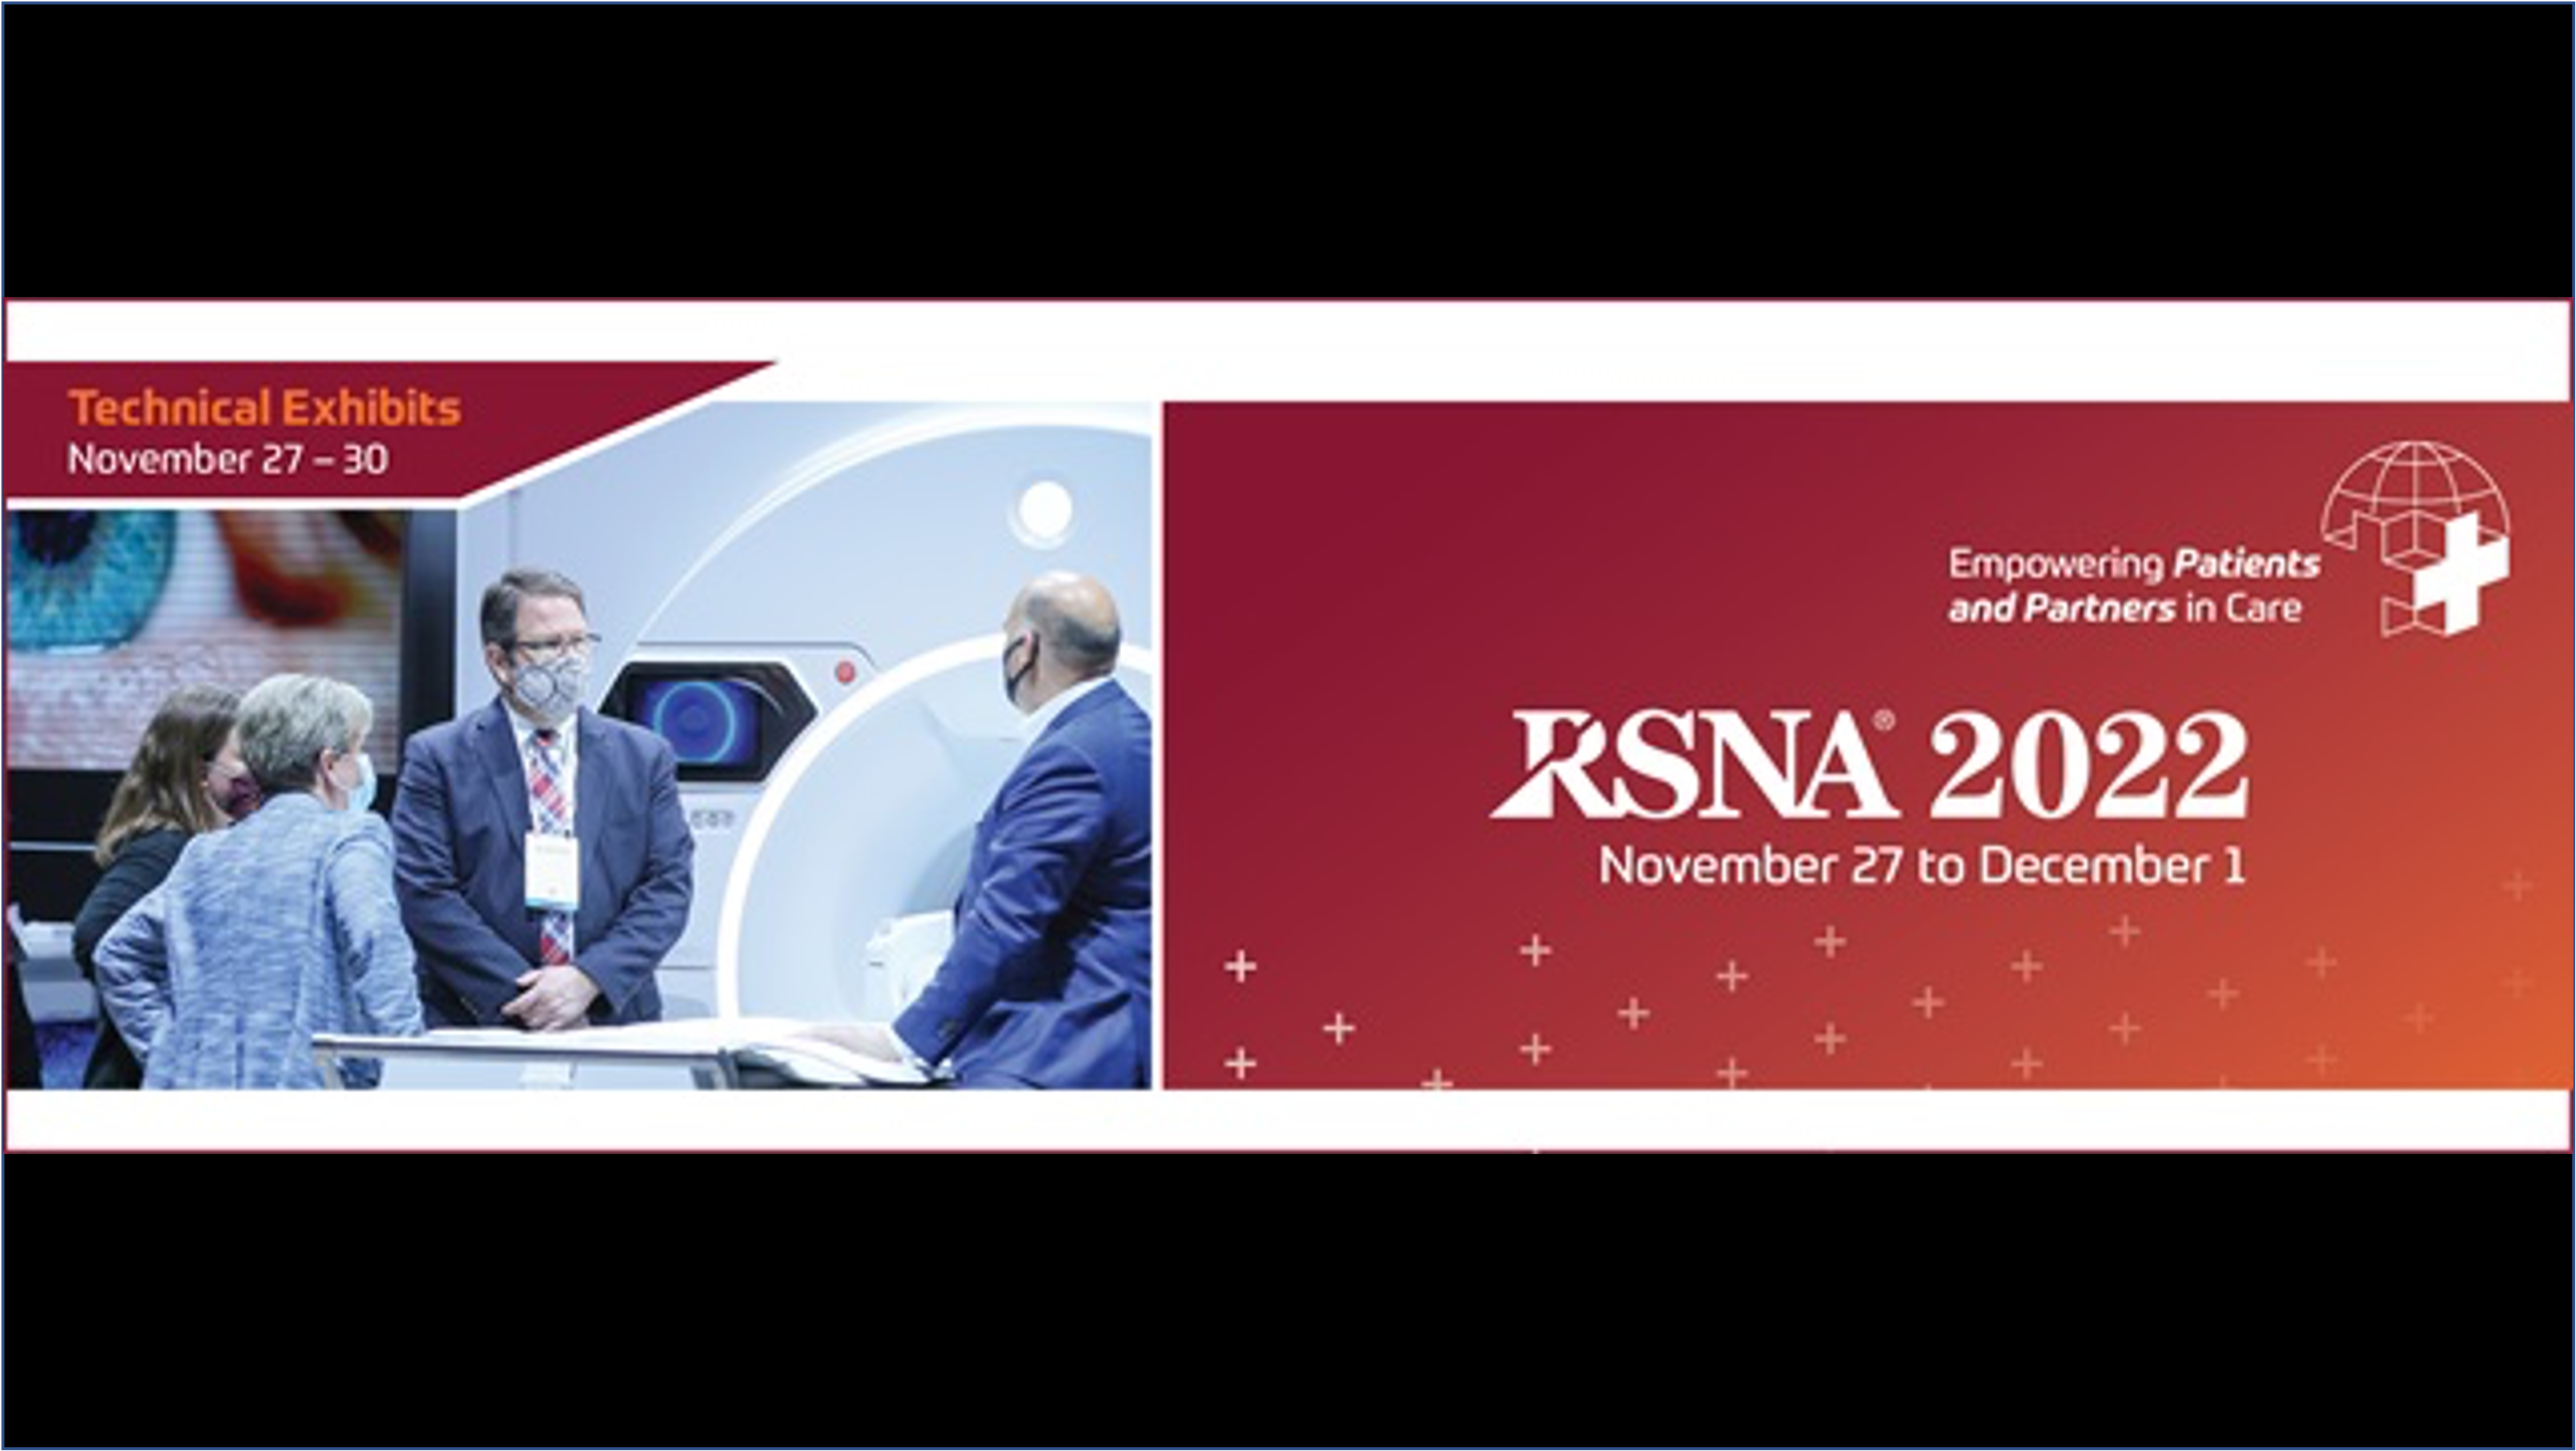 RSD is Exhibiting at RSNA 2022!